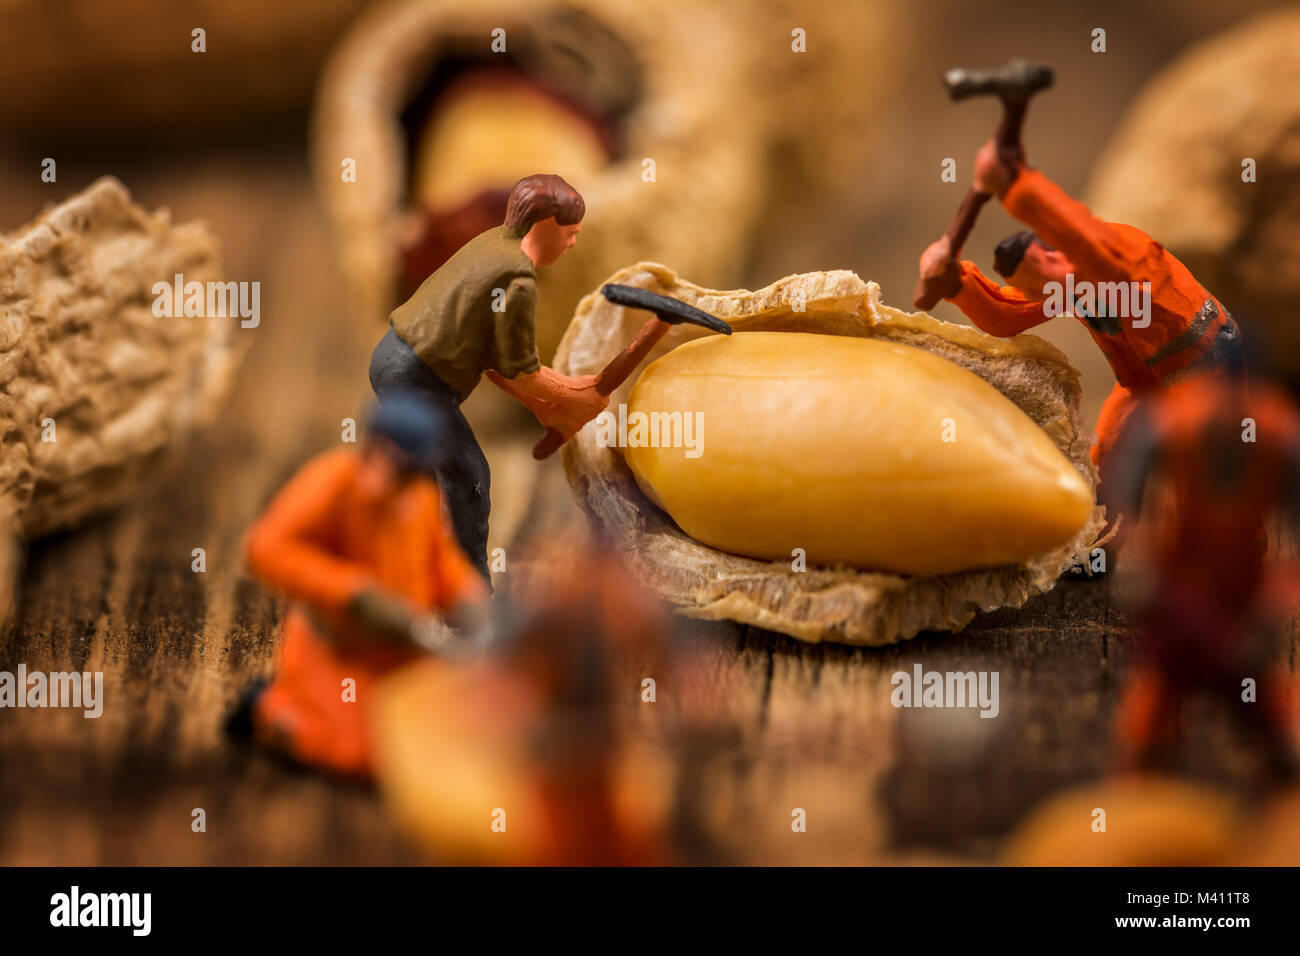 Miniatur Figuren arbeiten an Erdnüsse Makro Fotografie auf Holz Tisch Stockfoto